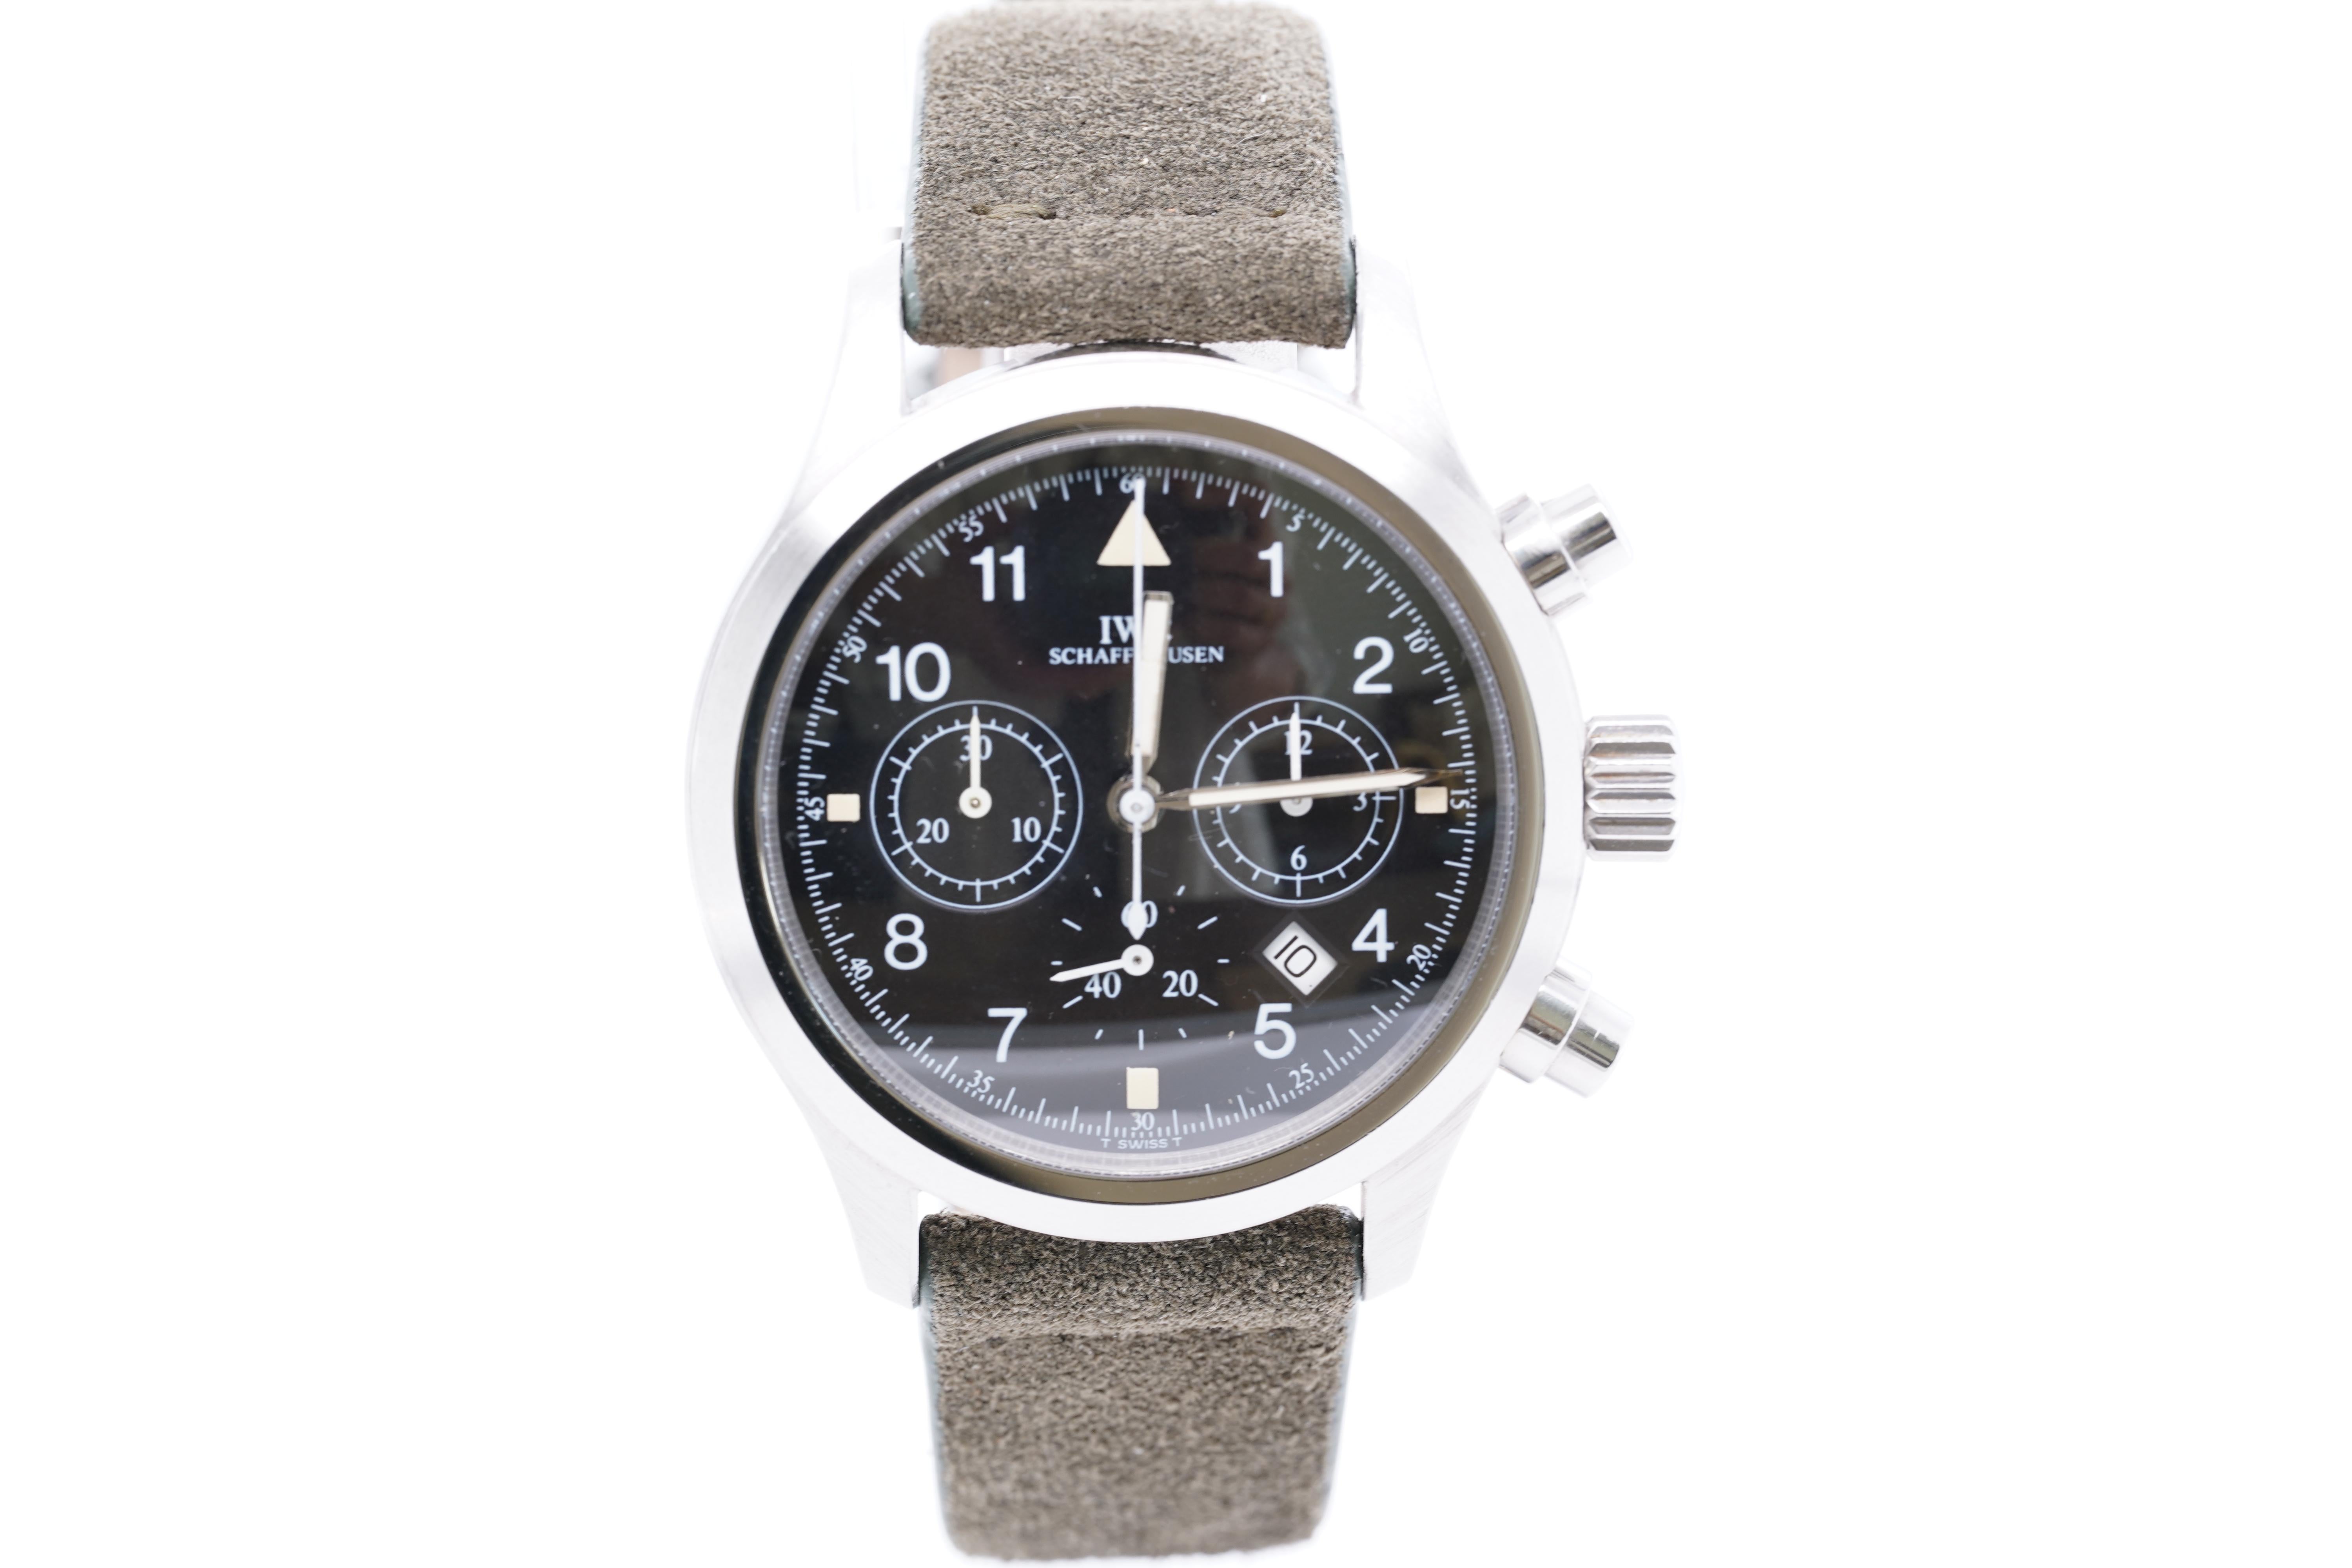 IWC Schaffhausen Fliegerchronograph Pilot's Watch Suede Strap Orig Box In Excellent Condition In Bozeman, MT